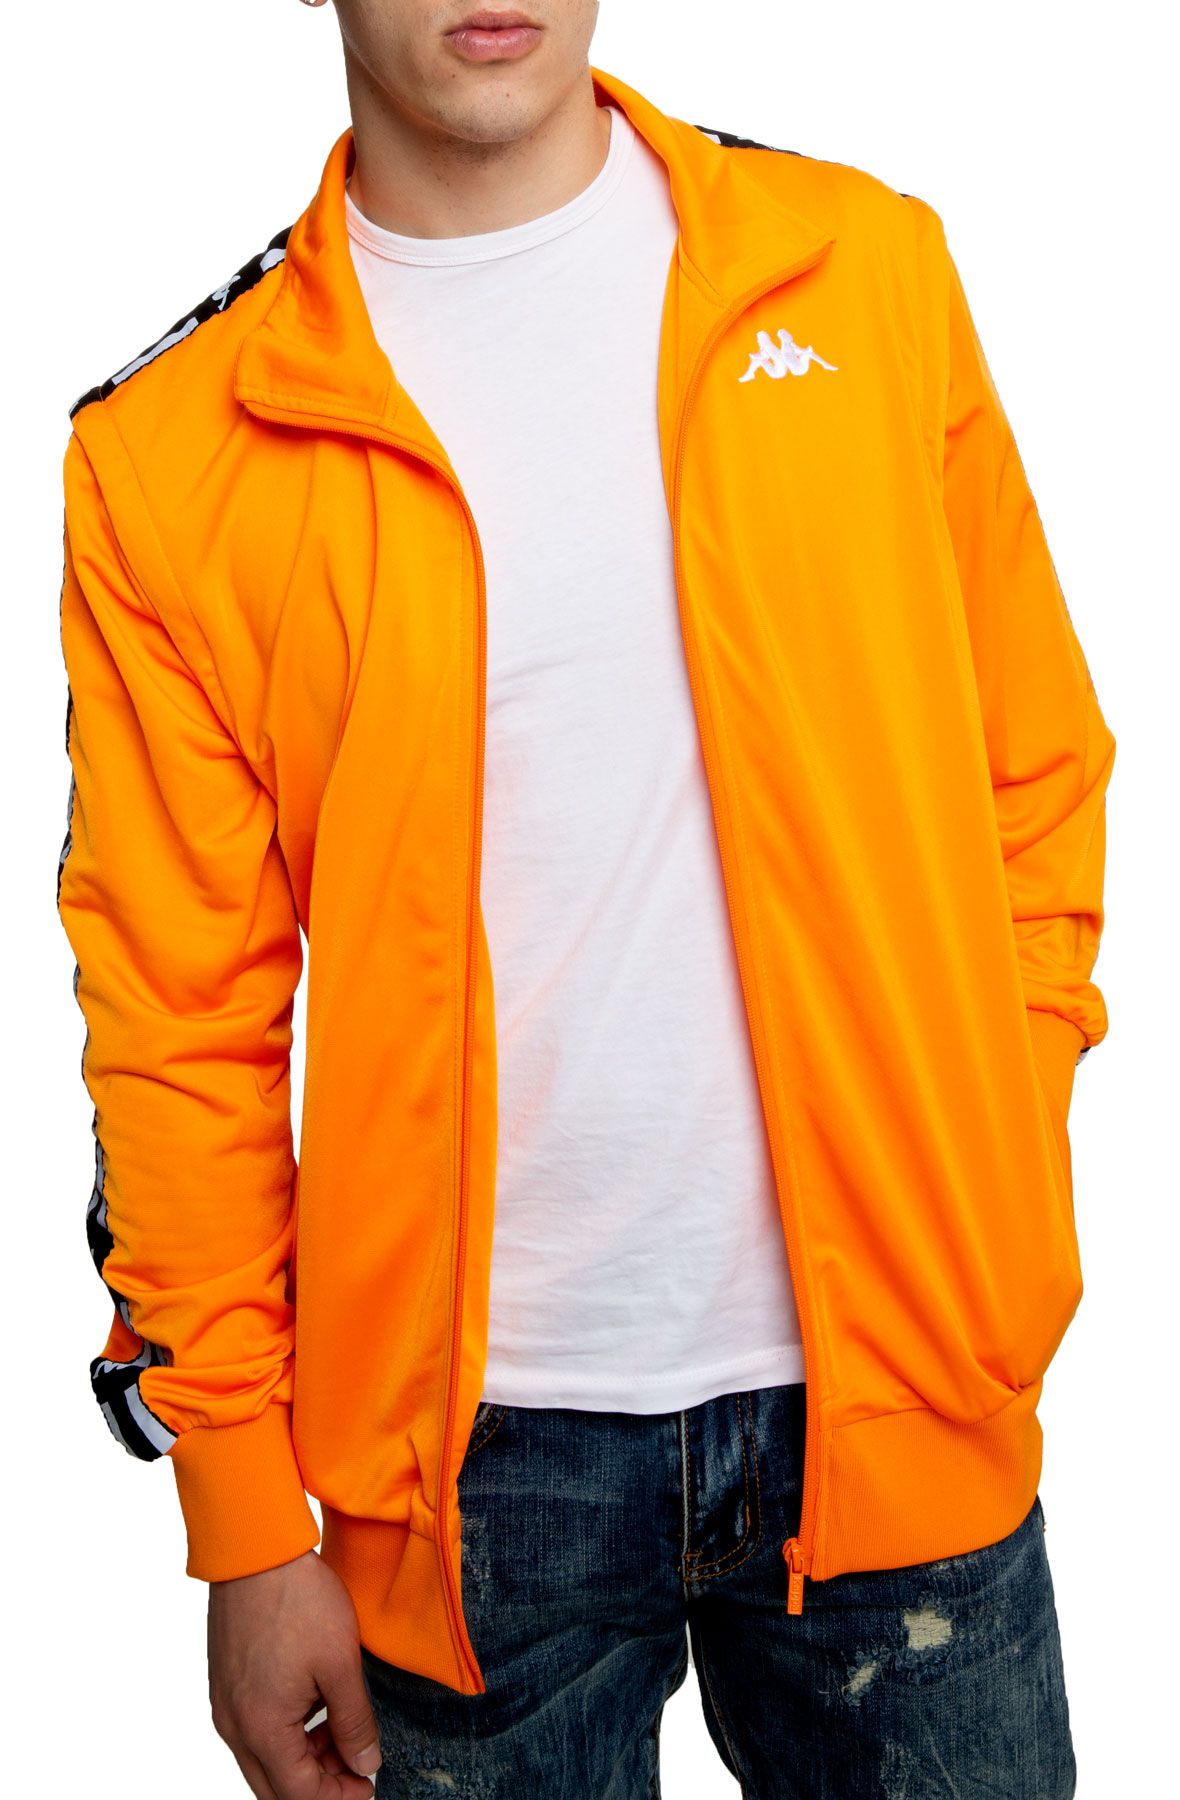 kappa orange jacket